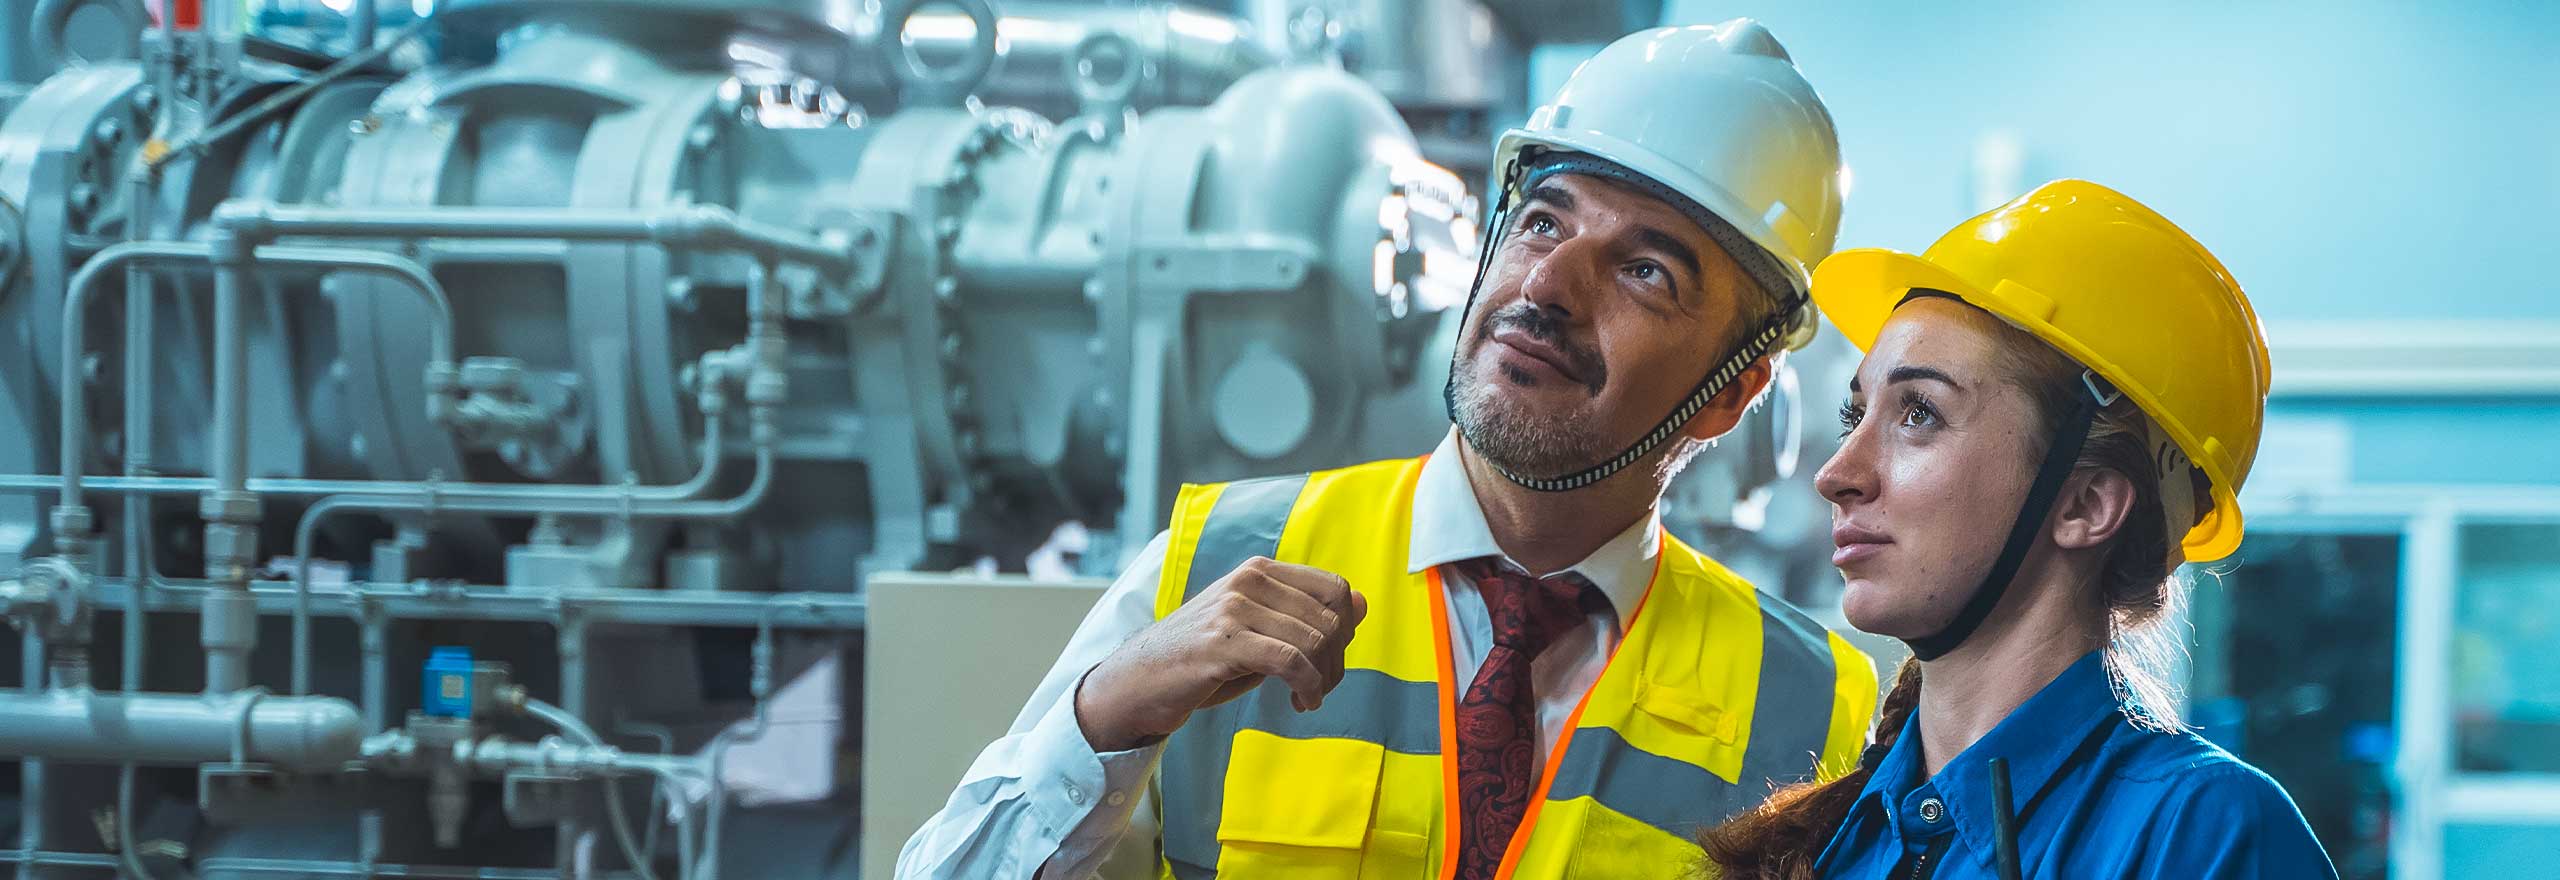 Operatori tecnici collegati che controllano e lavorano in una grande fabbrica industriale.